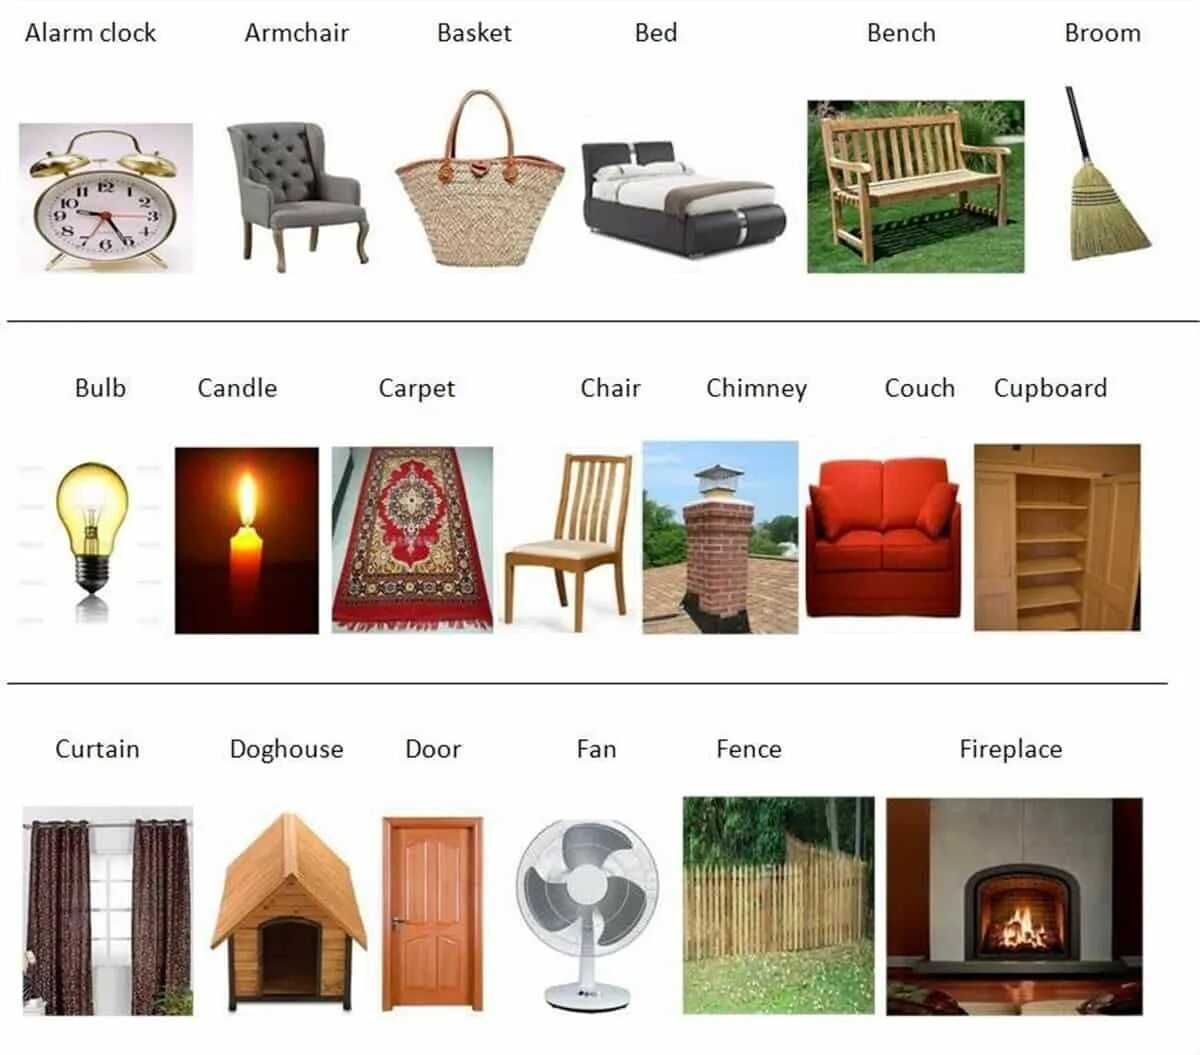 Мебель дома на английском. Предметы мебели. Название мебели. Мебель на английском языке. Названия предметов мебели и интерьера.